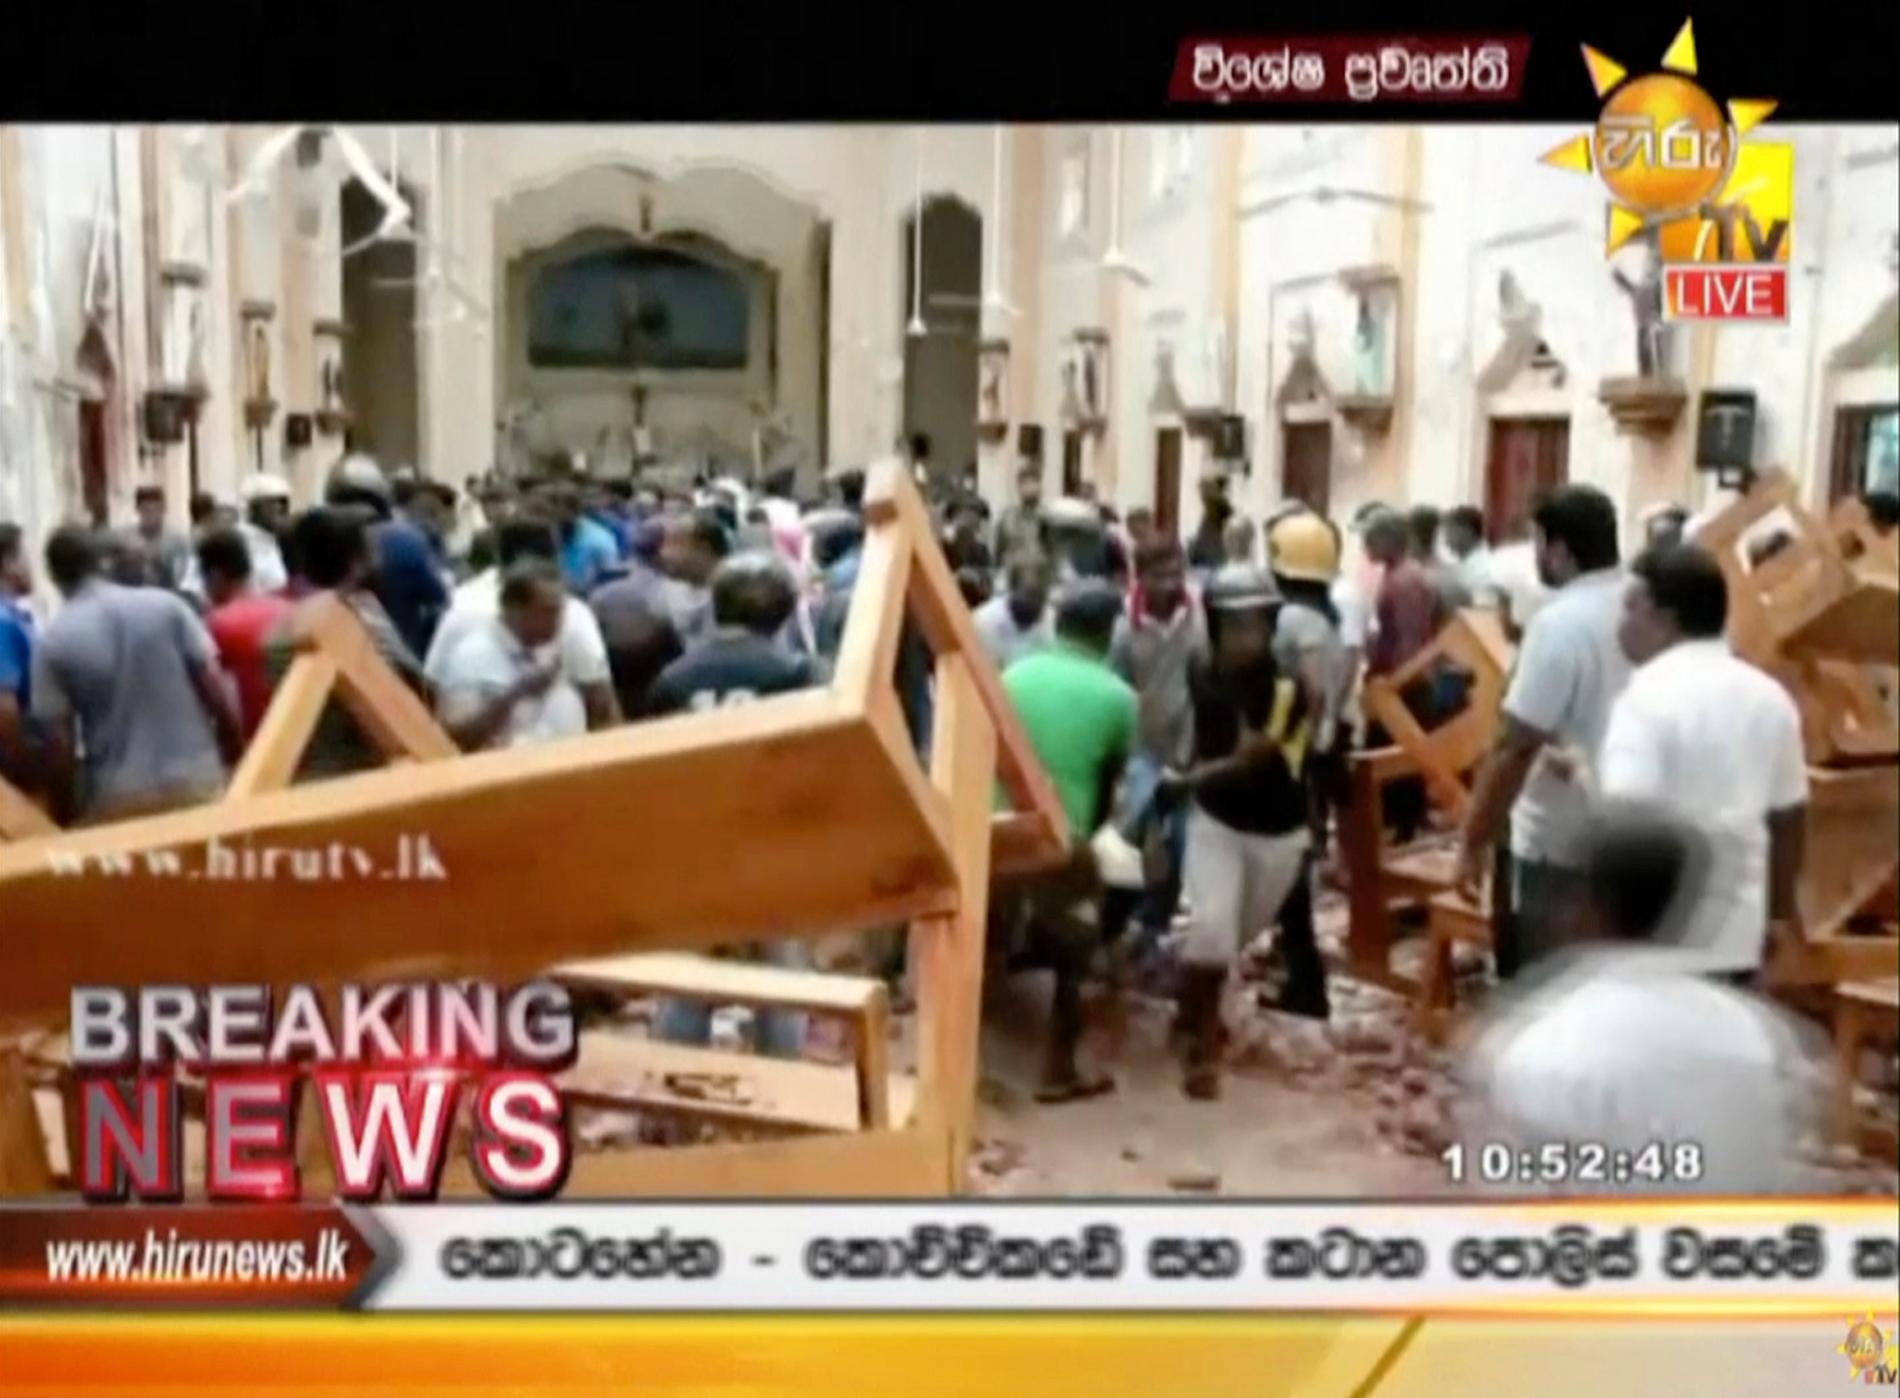 Stillbild från lokal-tv tagen inne i en kyrka i Colombo.